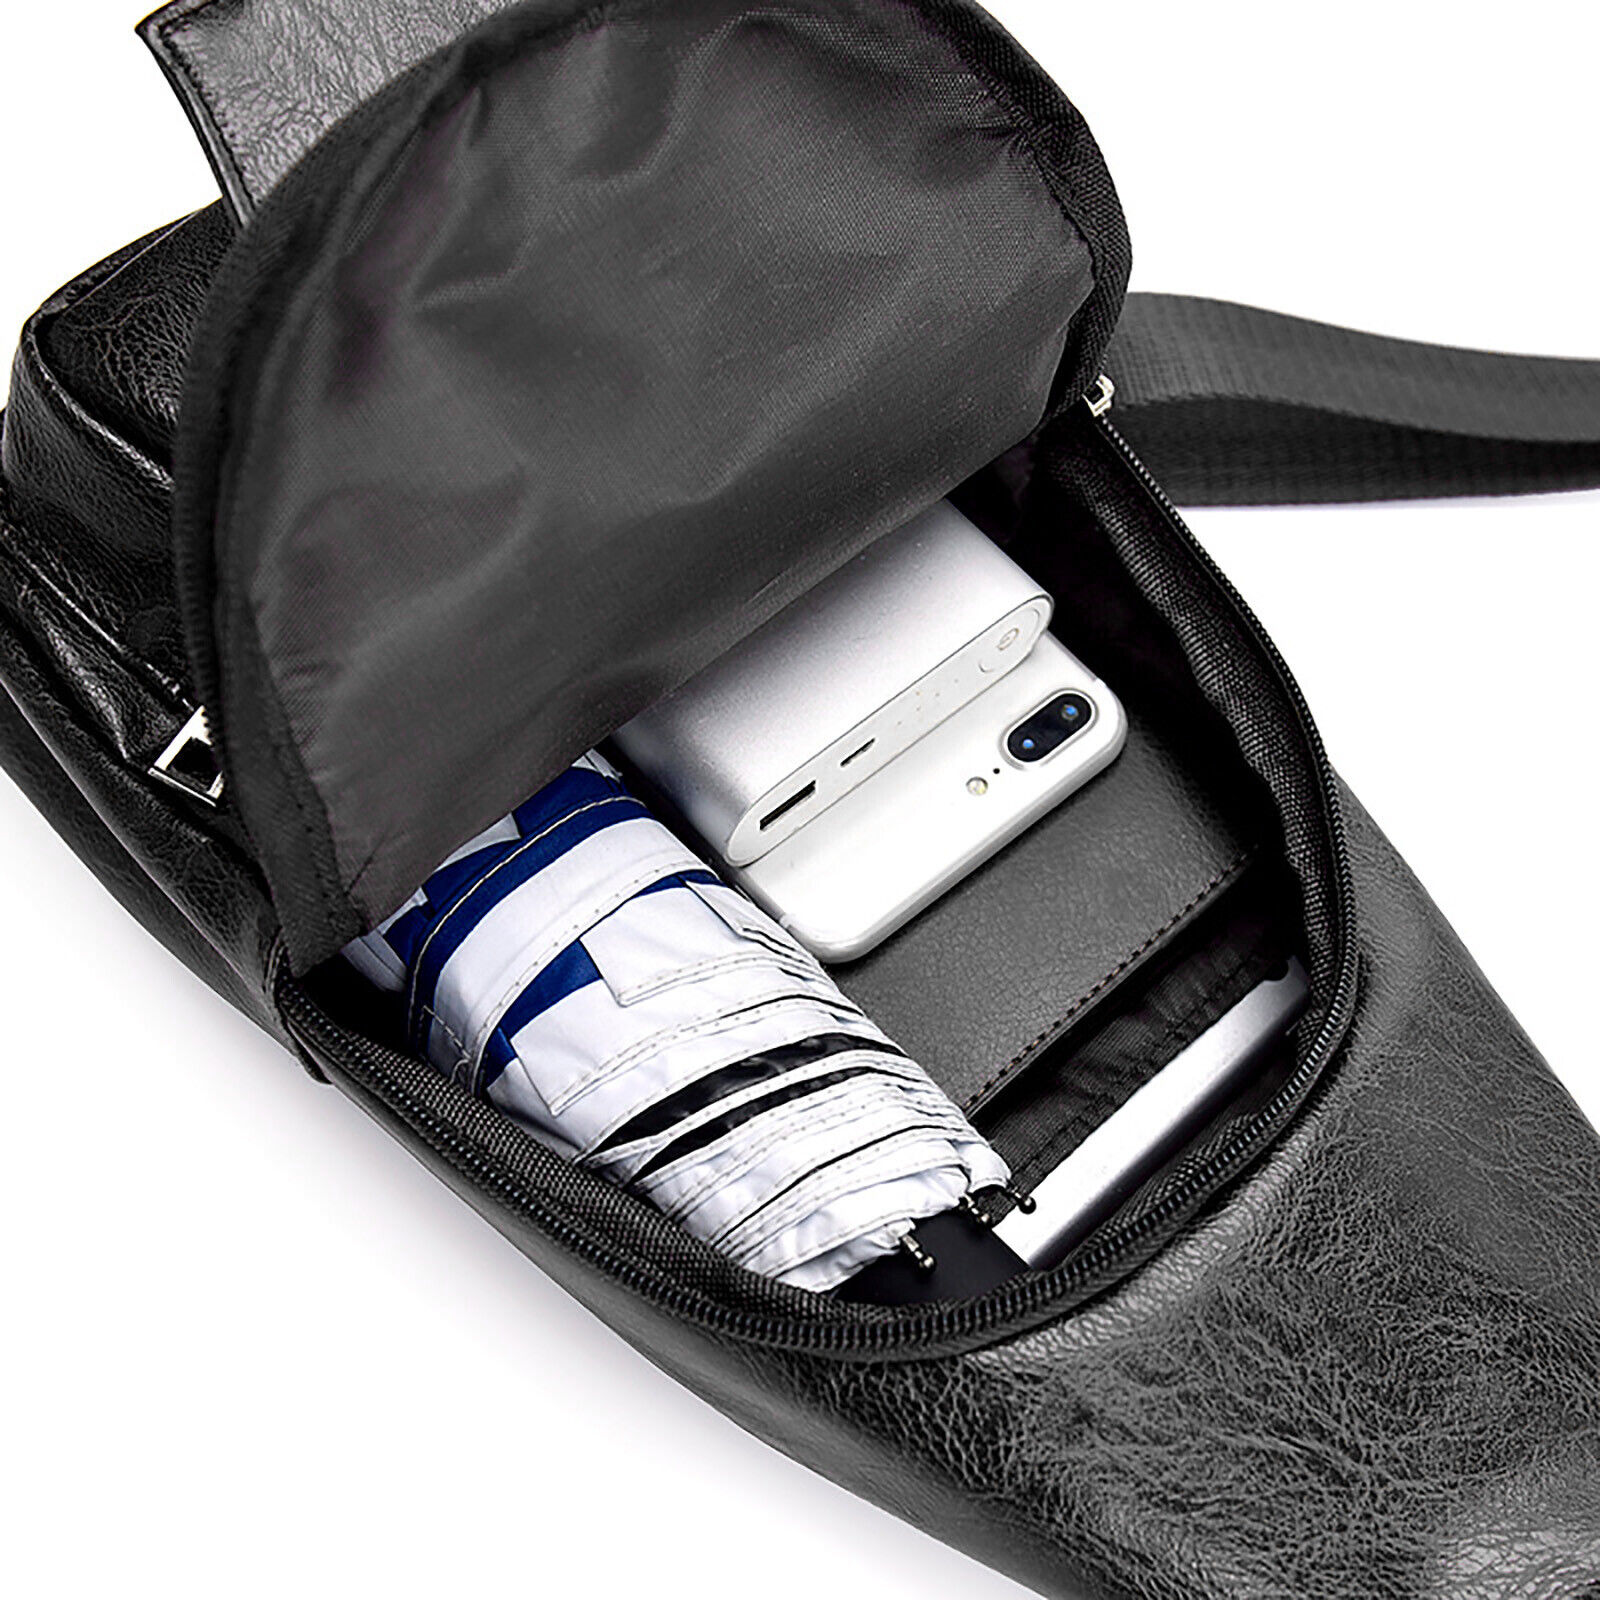 ::Men Leather Sling Bag Chest Shoulder Crossbody Backpack USB Charging Port Travel